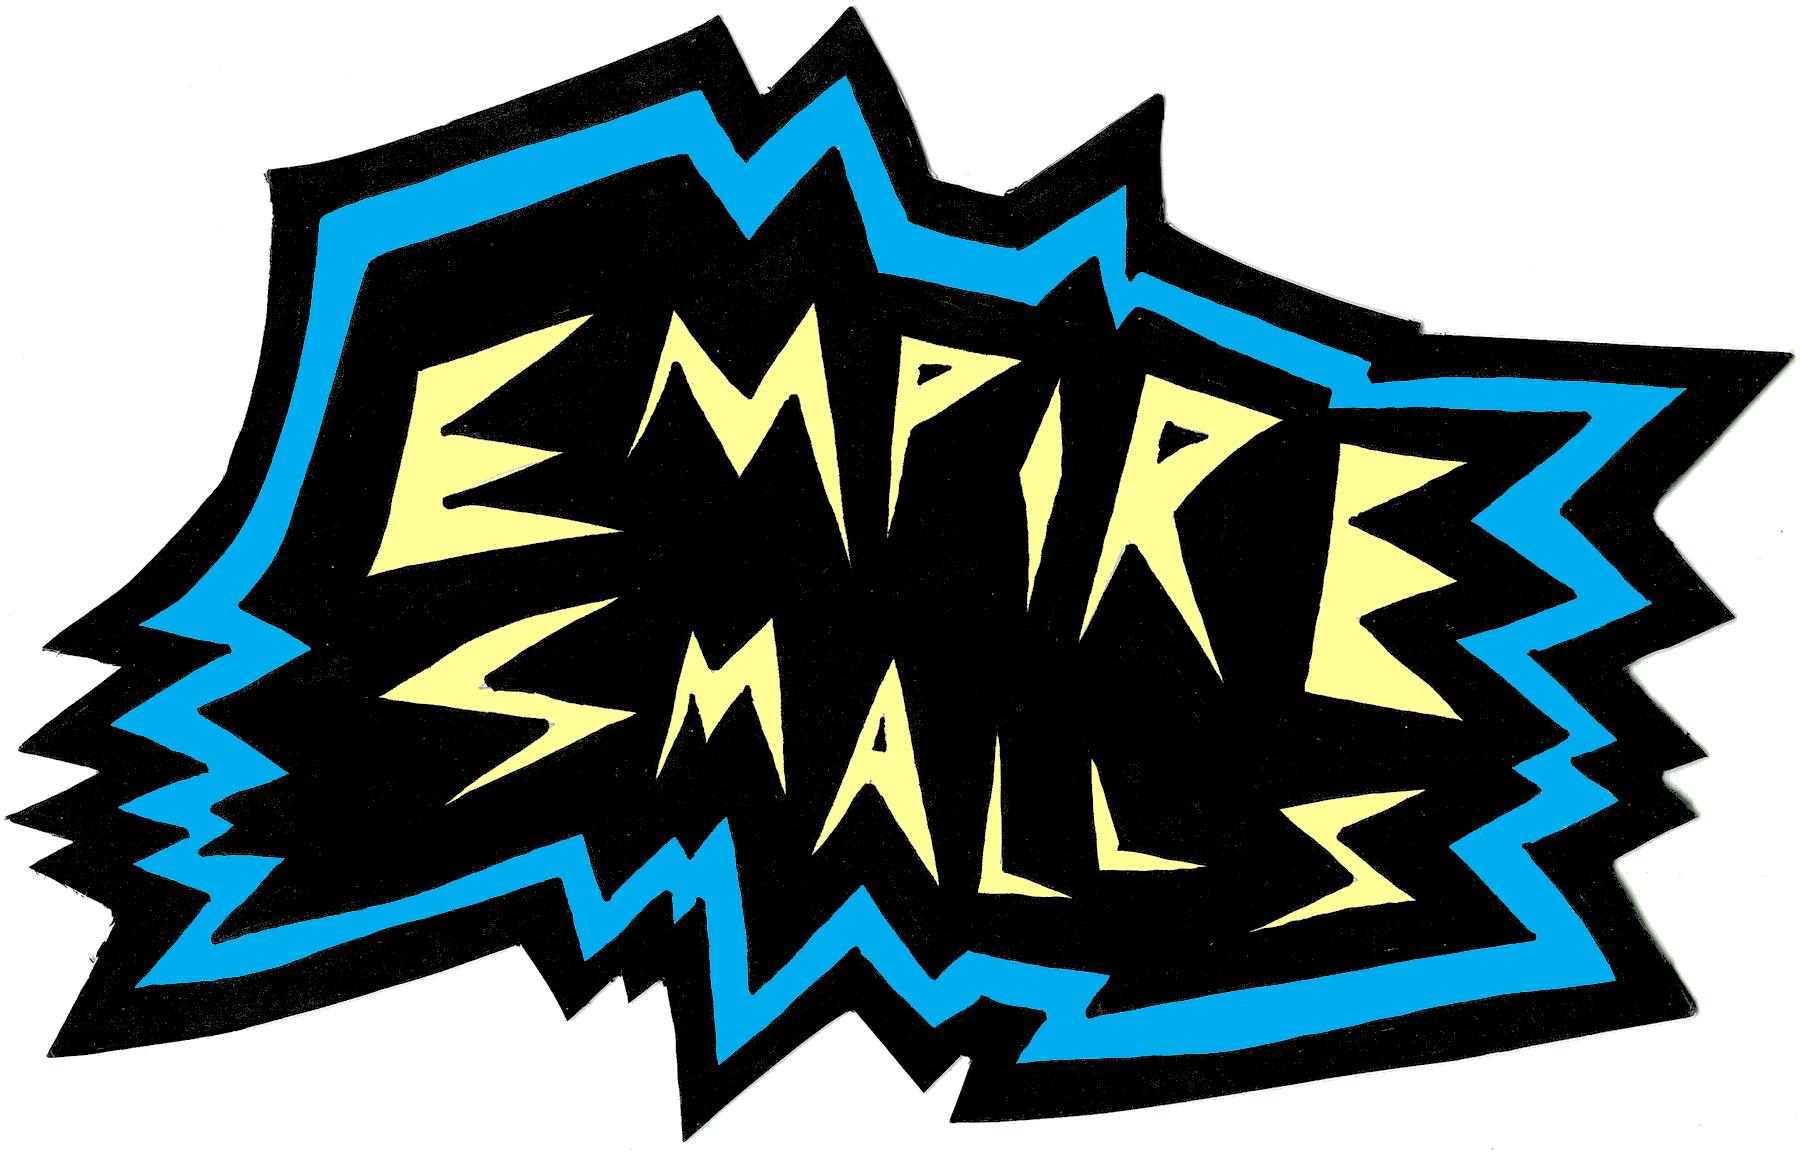 Empire Smalls